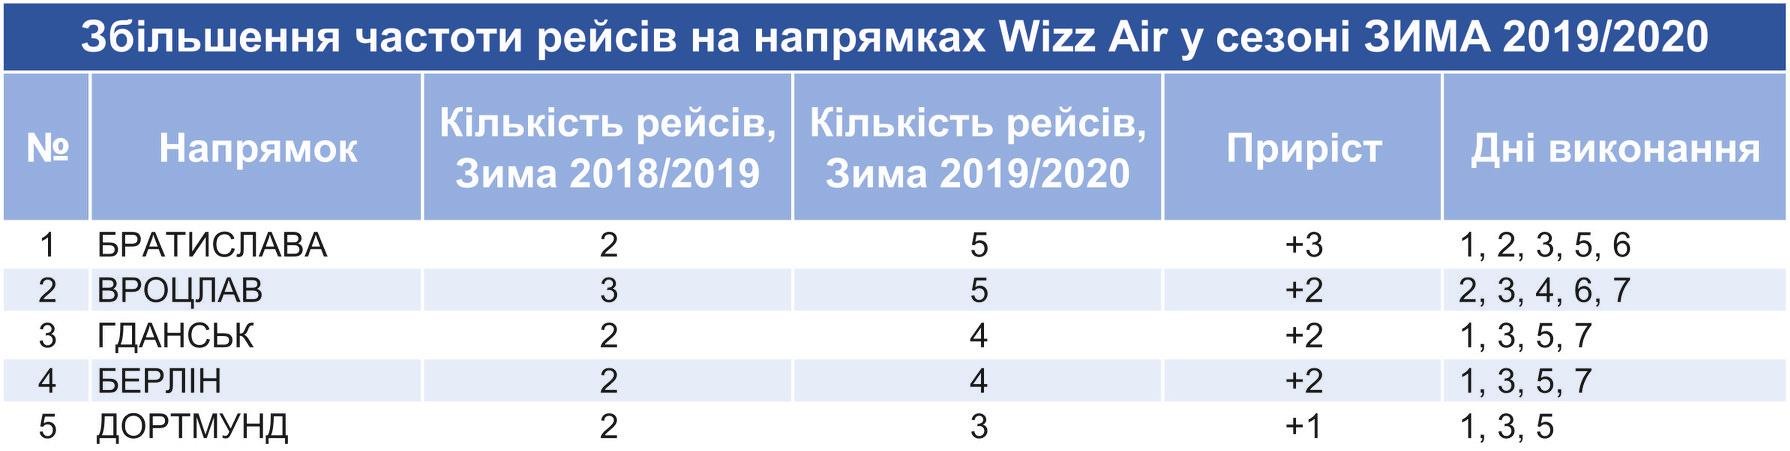 	Венгерский лоукостер будет чаще летать зимой из Львова в города ЕС